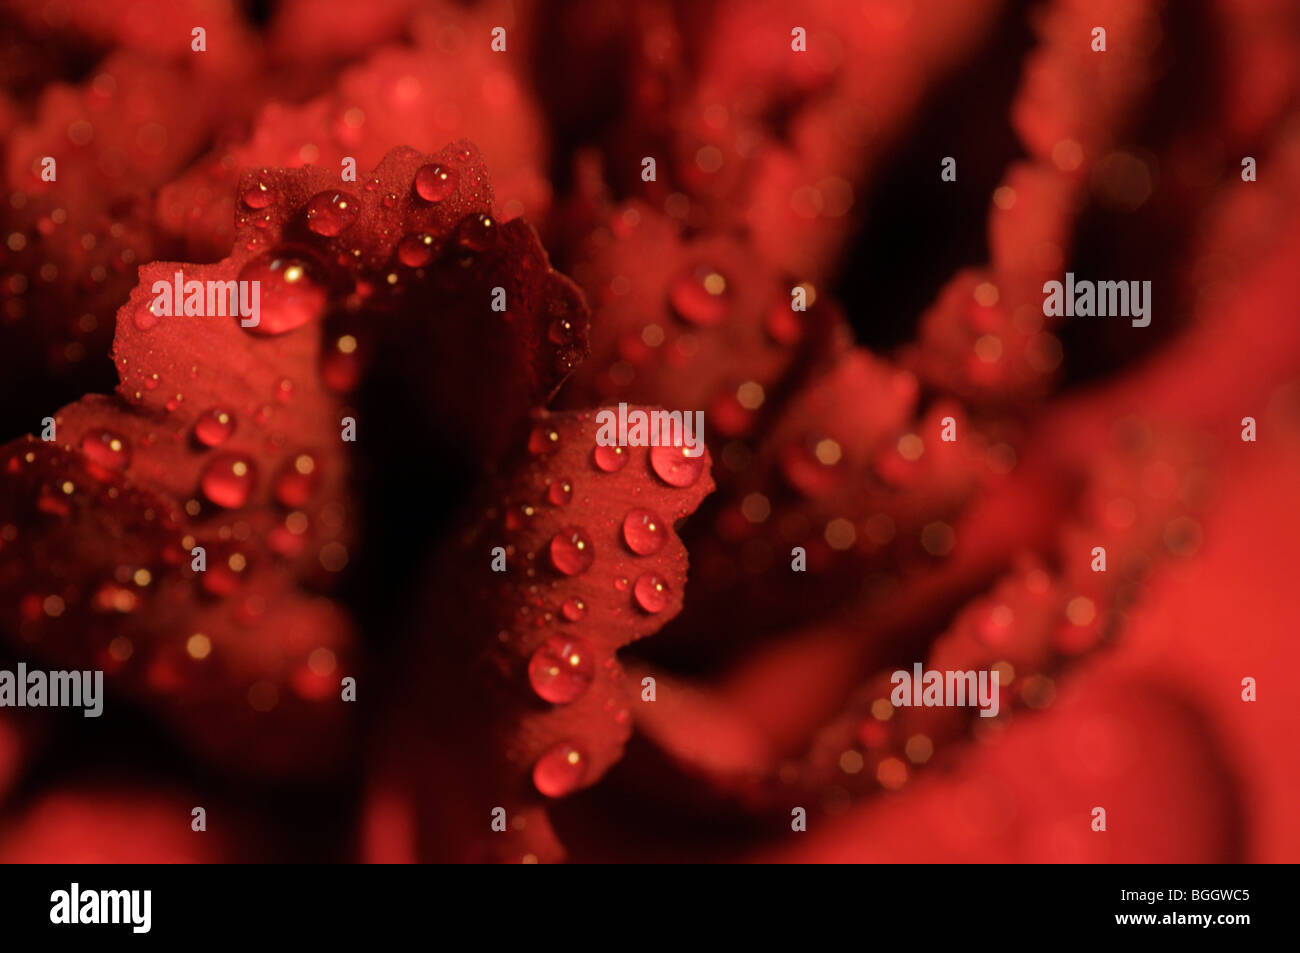 Detalle - los pétalos de una flor de clavel rojo con gotas de agua. Foto de stock